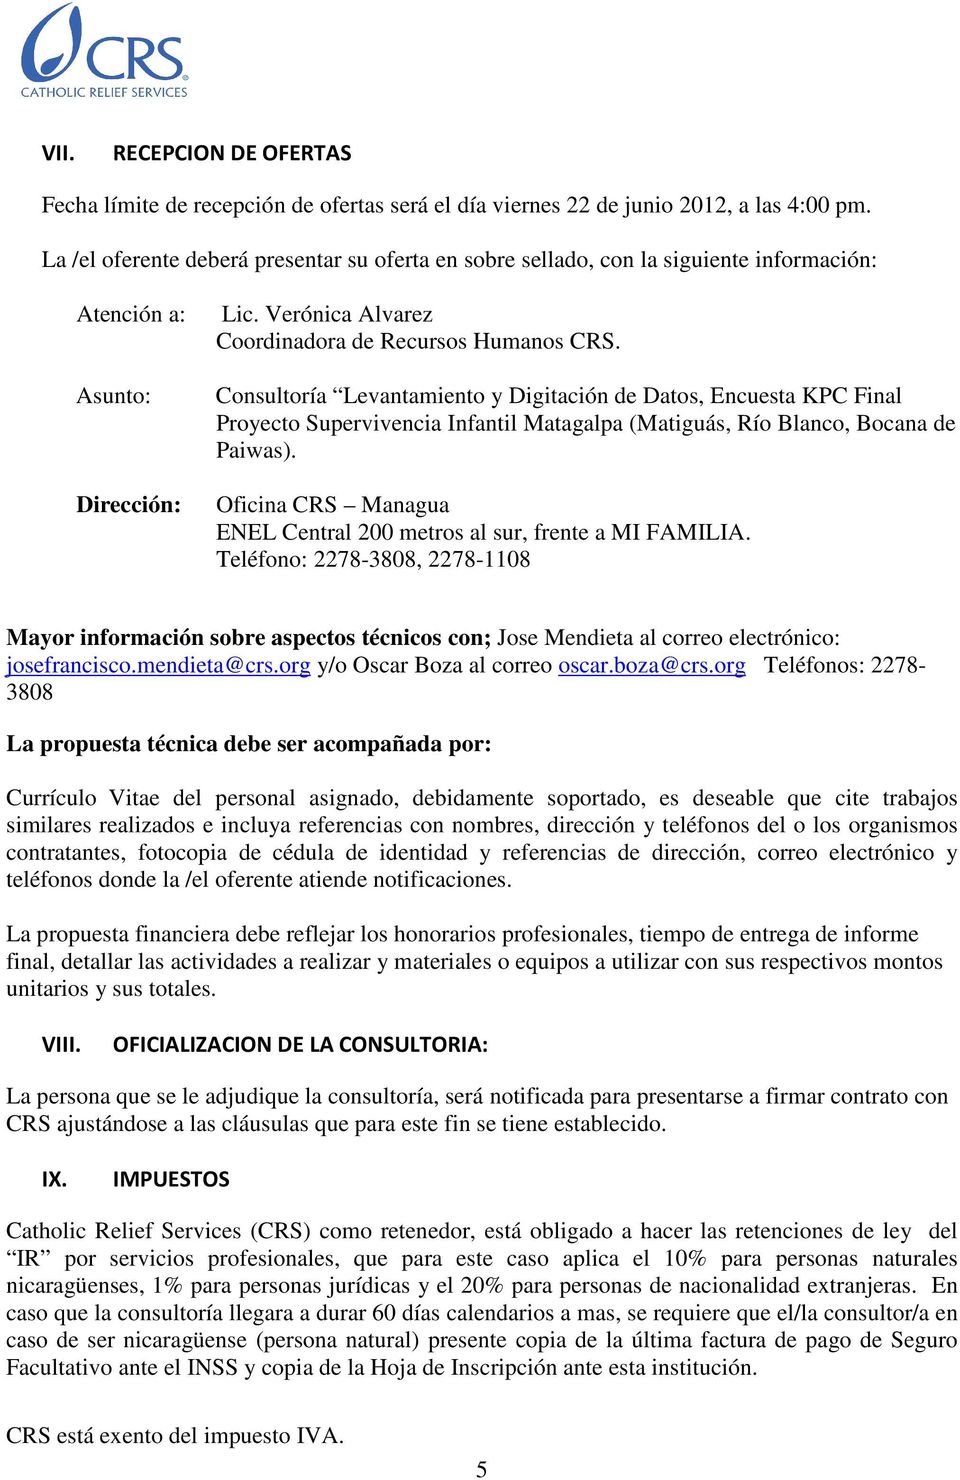 Consultoría Levantamiento y Digitación de Datos, Encuesta KPC Final Proyecto Supervivencia Infantil Matagalpa (Matiguás, Río Blanco, Bocana de Paiwas).